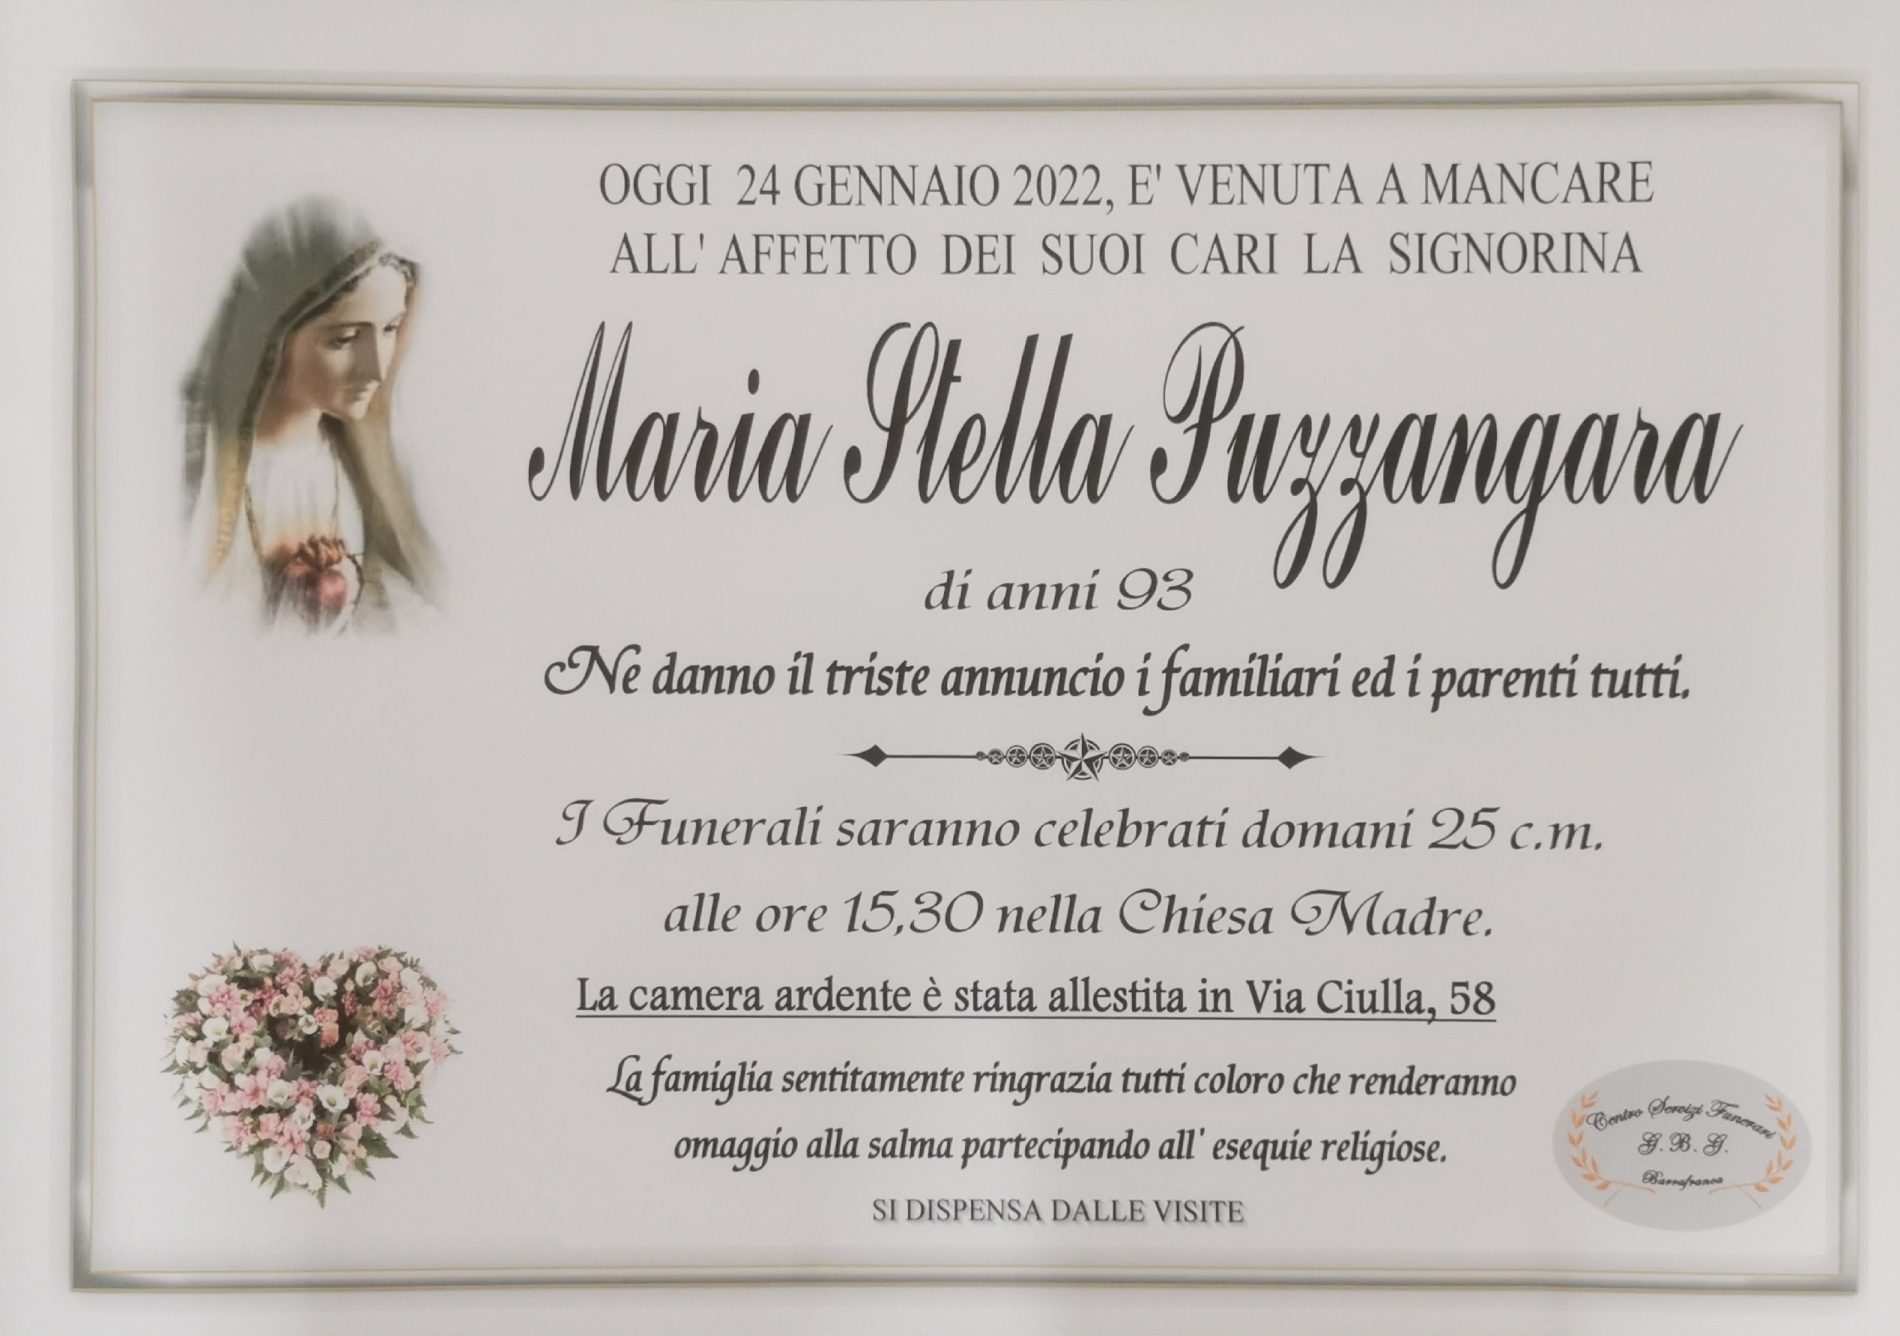 Annuncio servizi funerari agenzia G.B.G. signorina Maria Stella Puzzangara di anni 93